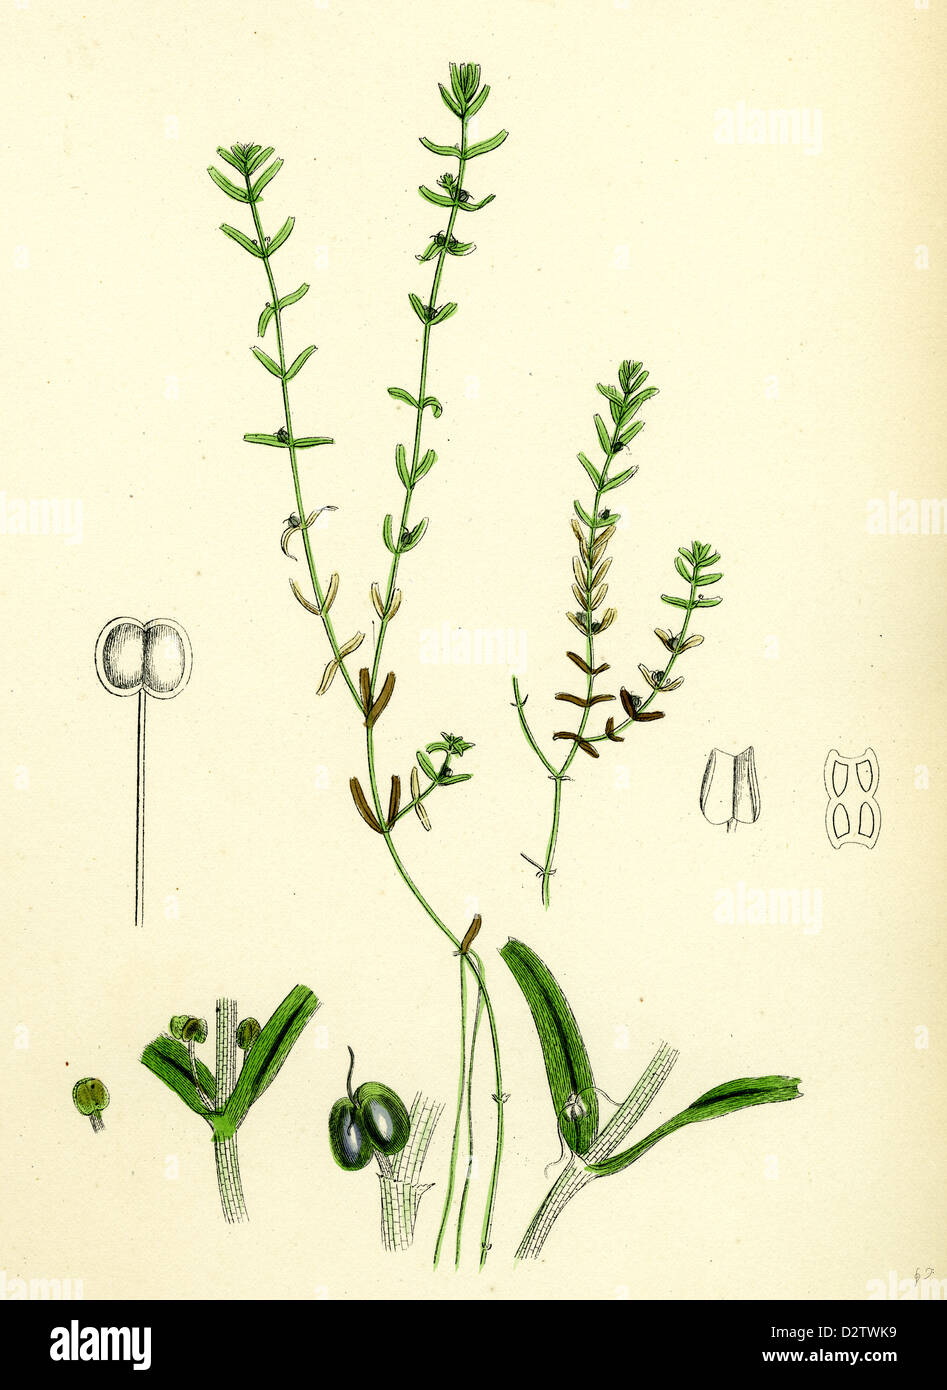 Callitriche pedunculata Pedunculated Water Starwort Stock Photo